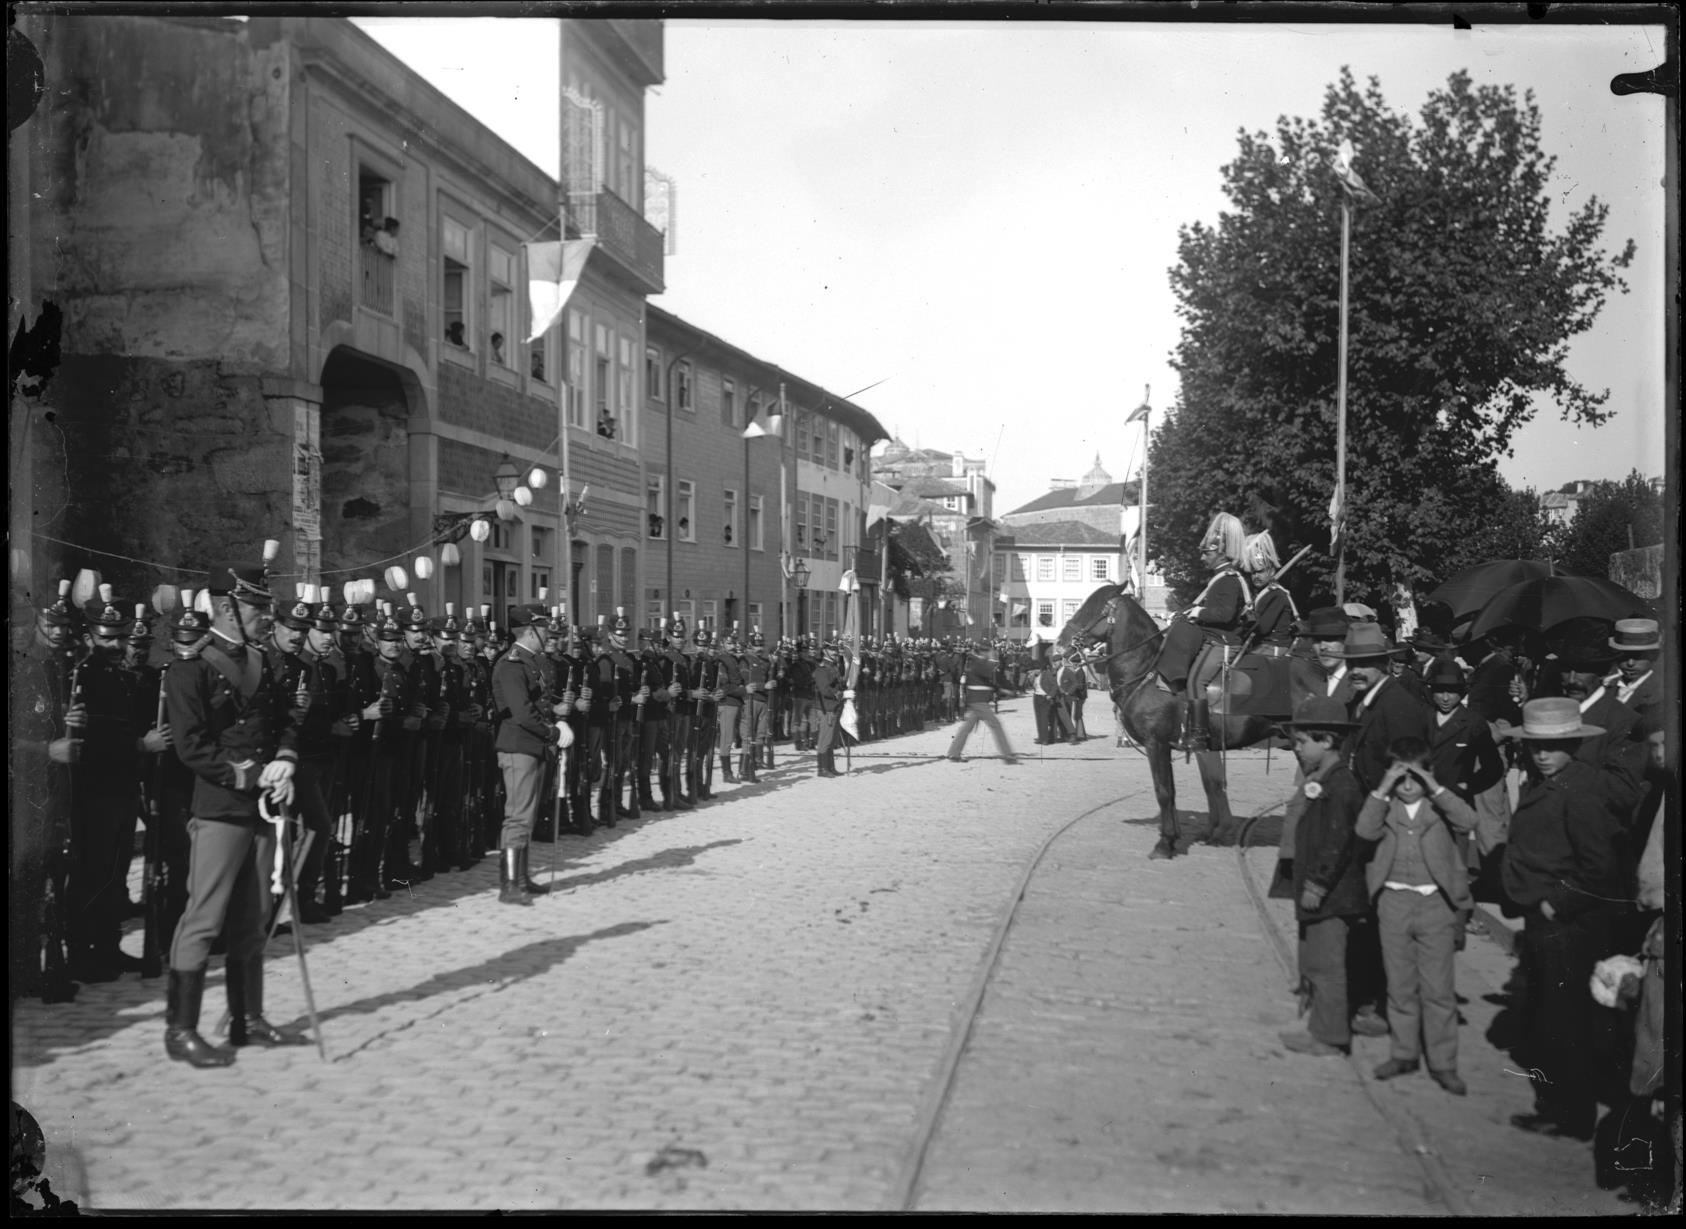 Parada militar do Regimento de Infantaria 18 do Porto